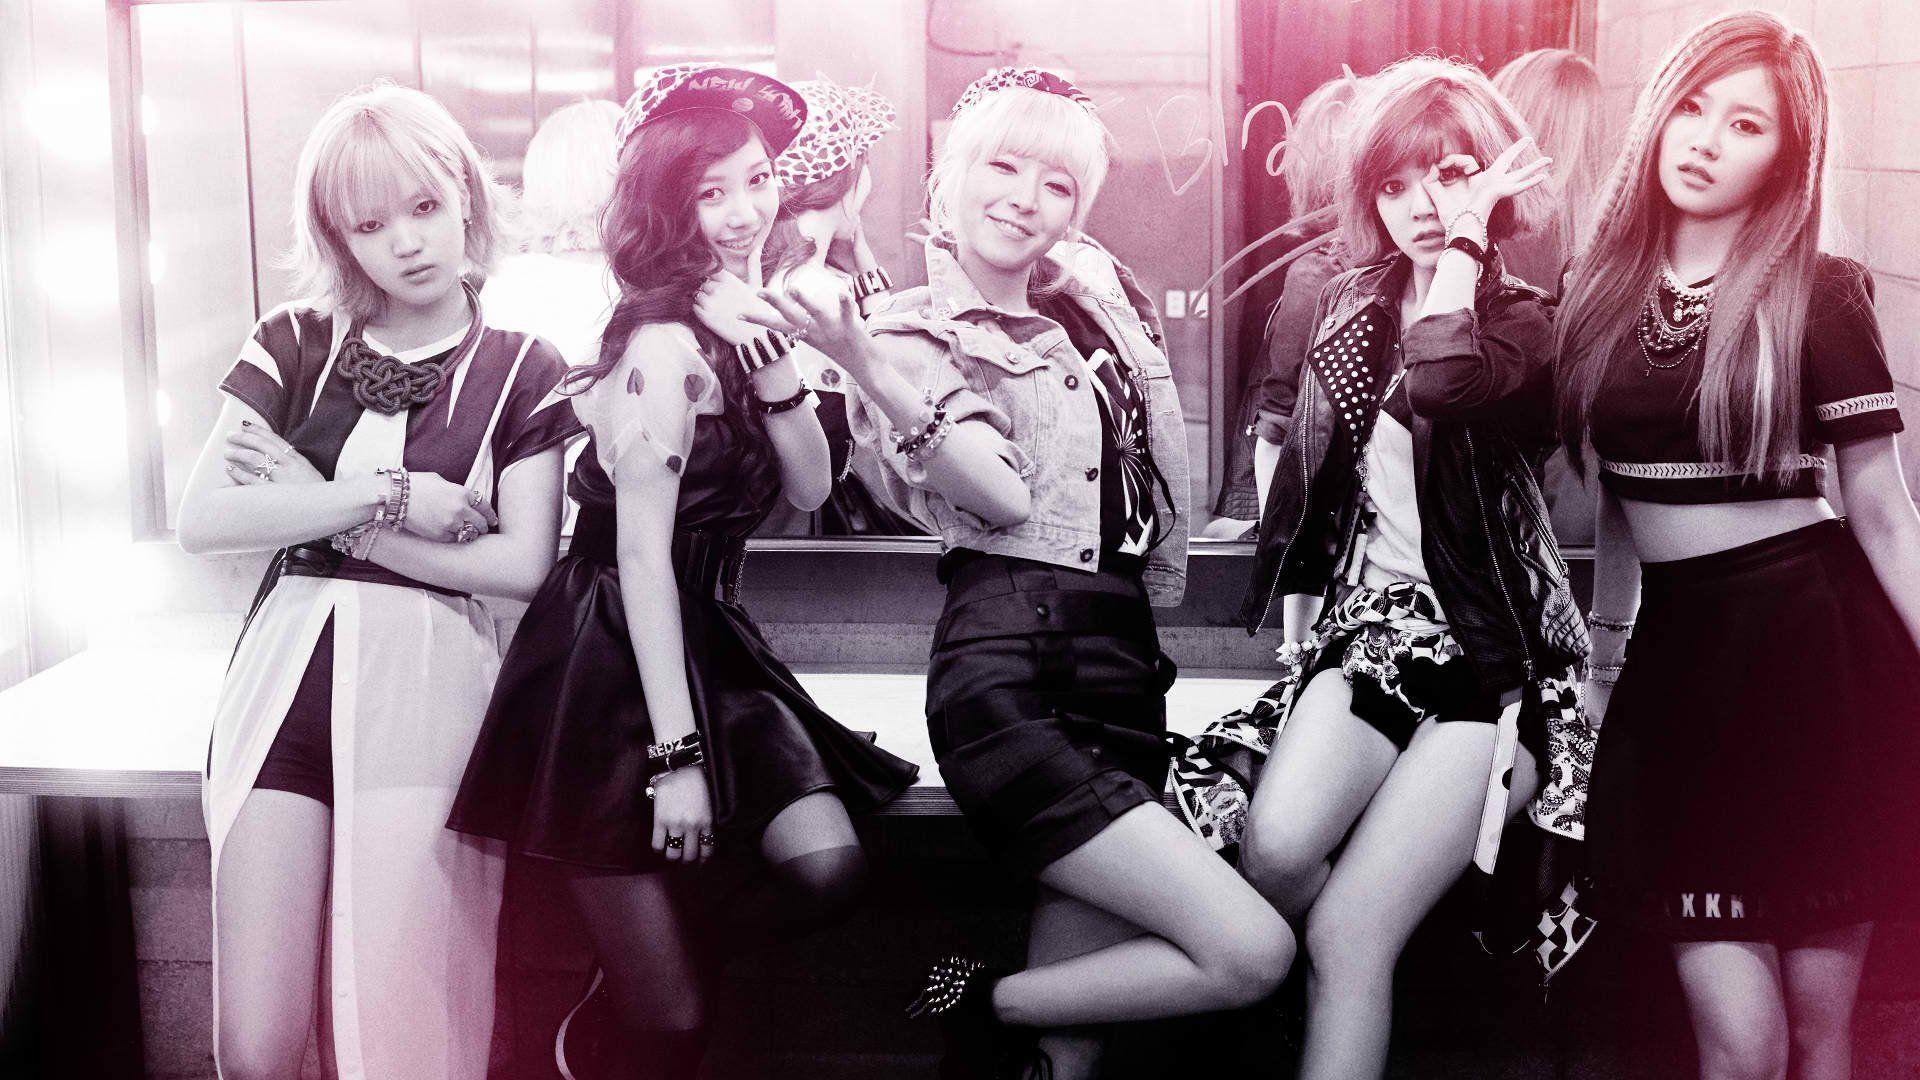 HD wallpaper: AOA, Korean music girls 01 | Wallpaper Flare